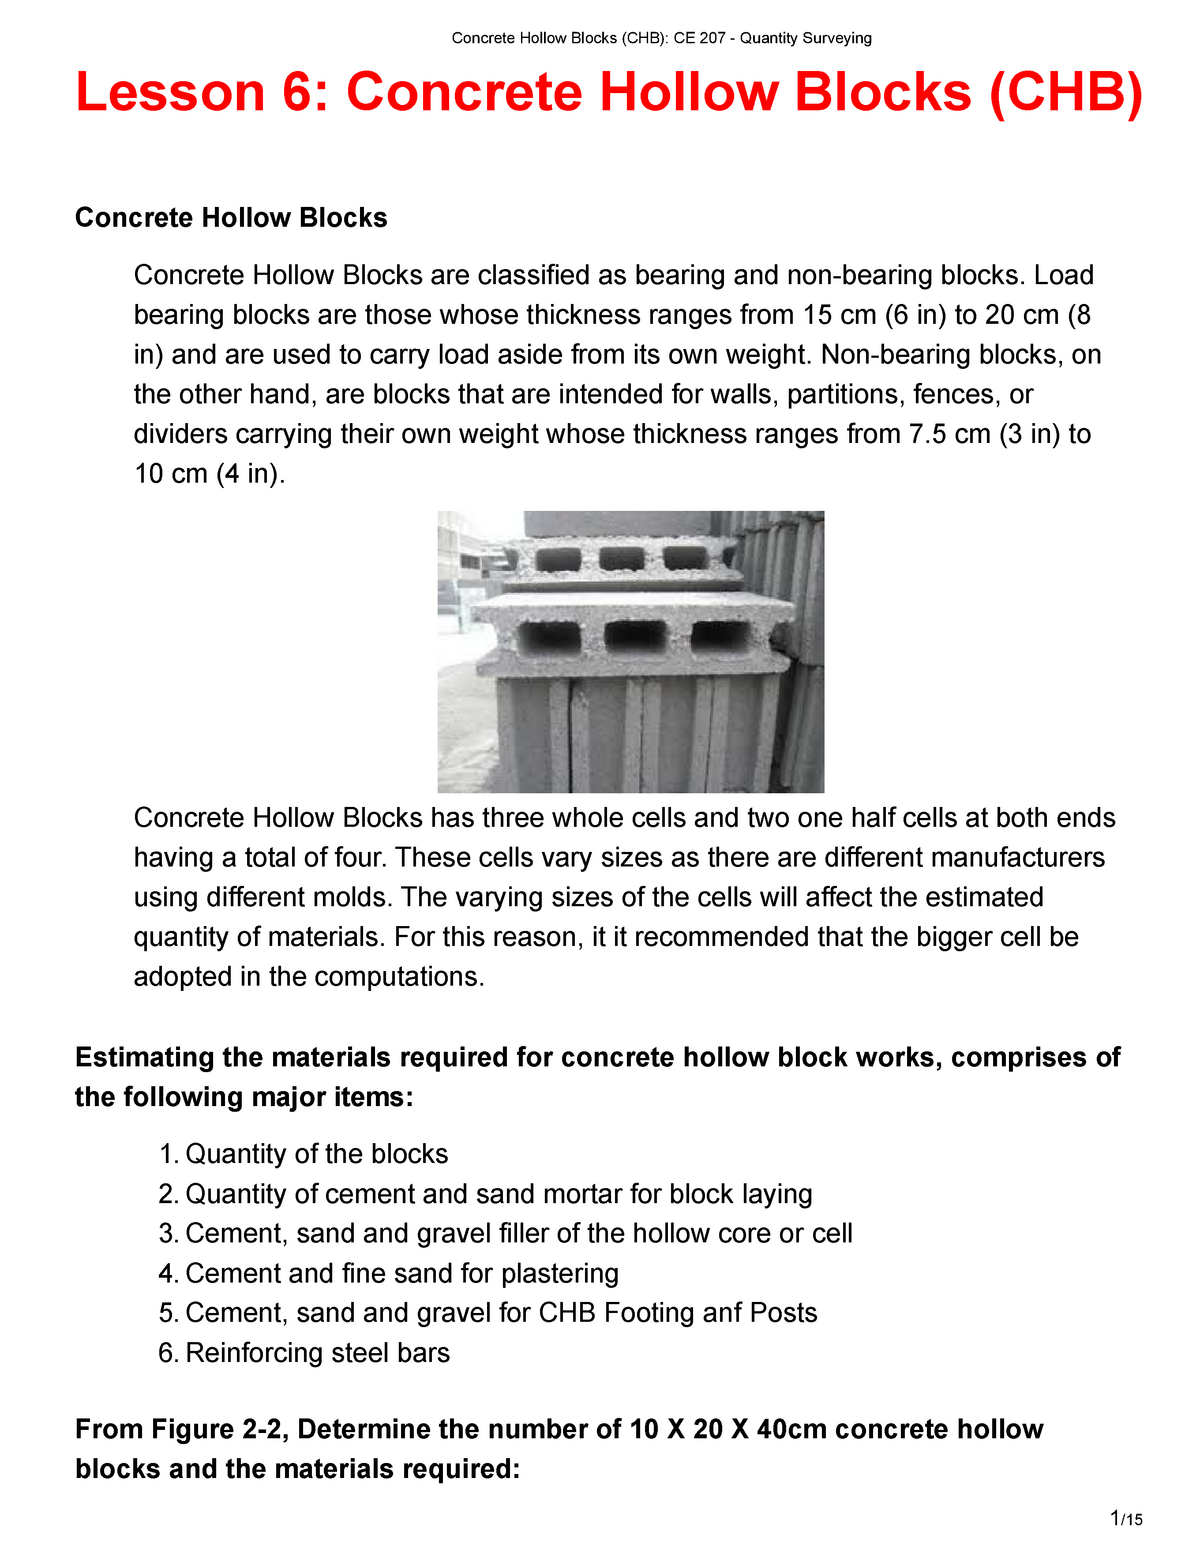 lesson-6-concrete-hollow-blocks-chb-concrete-hollow-blocks-chb-ce-207-quantity